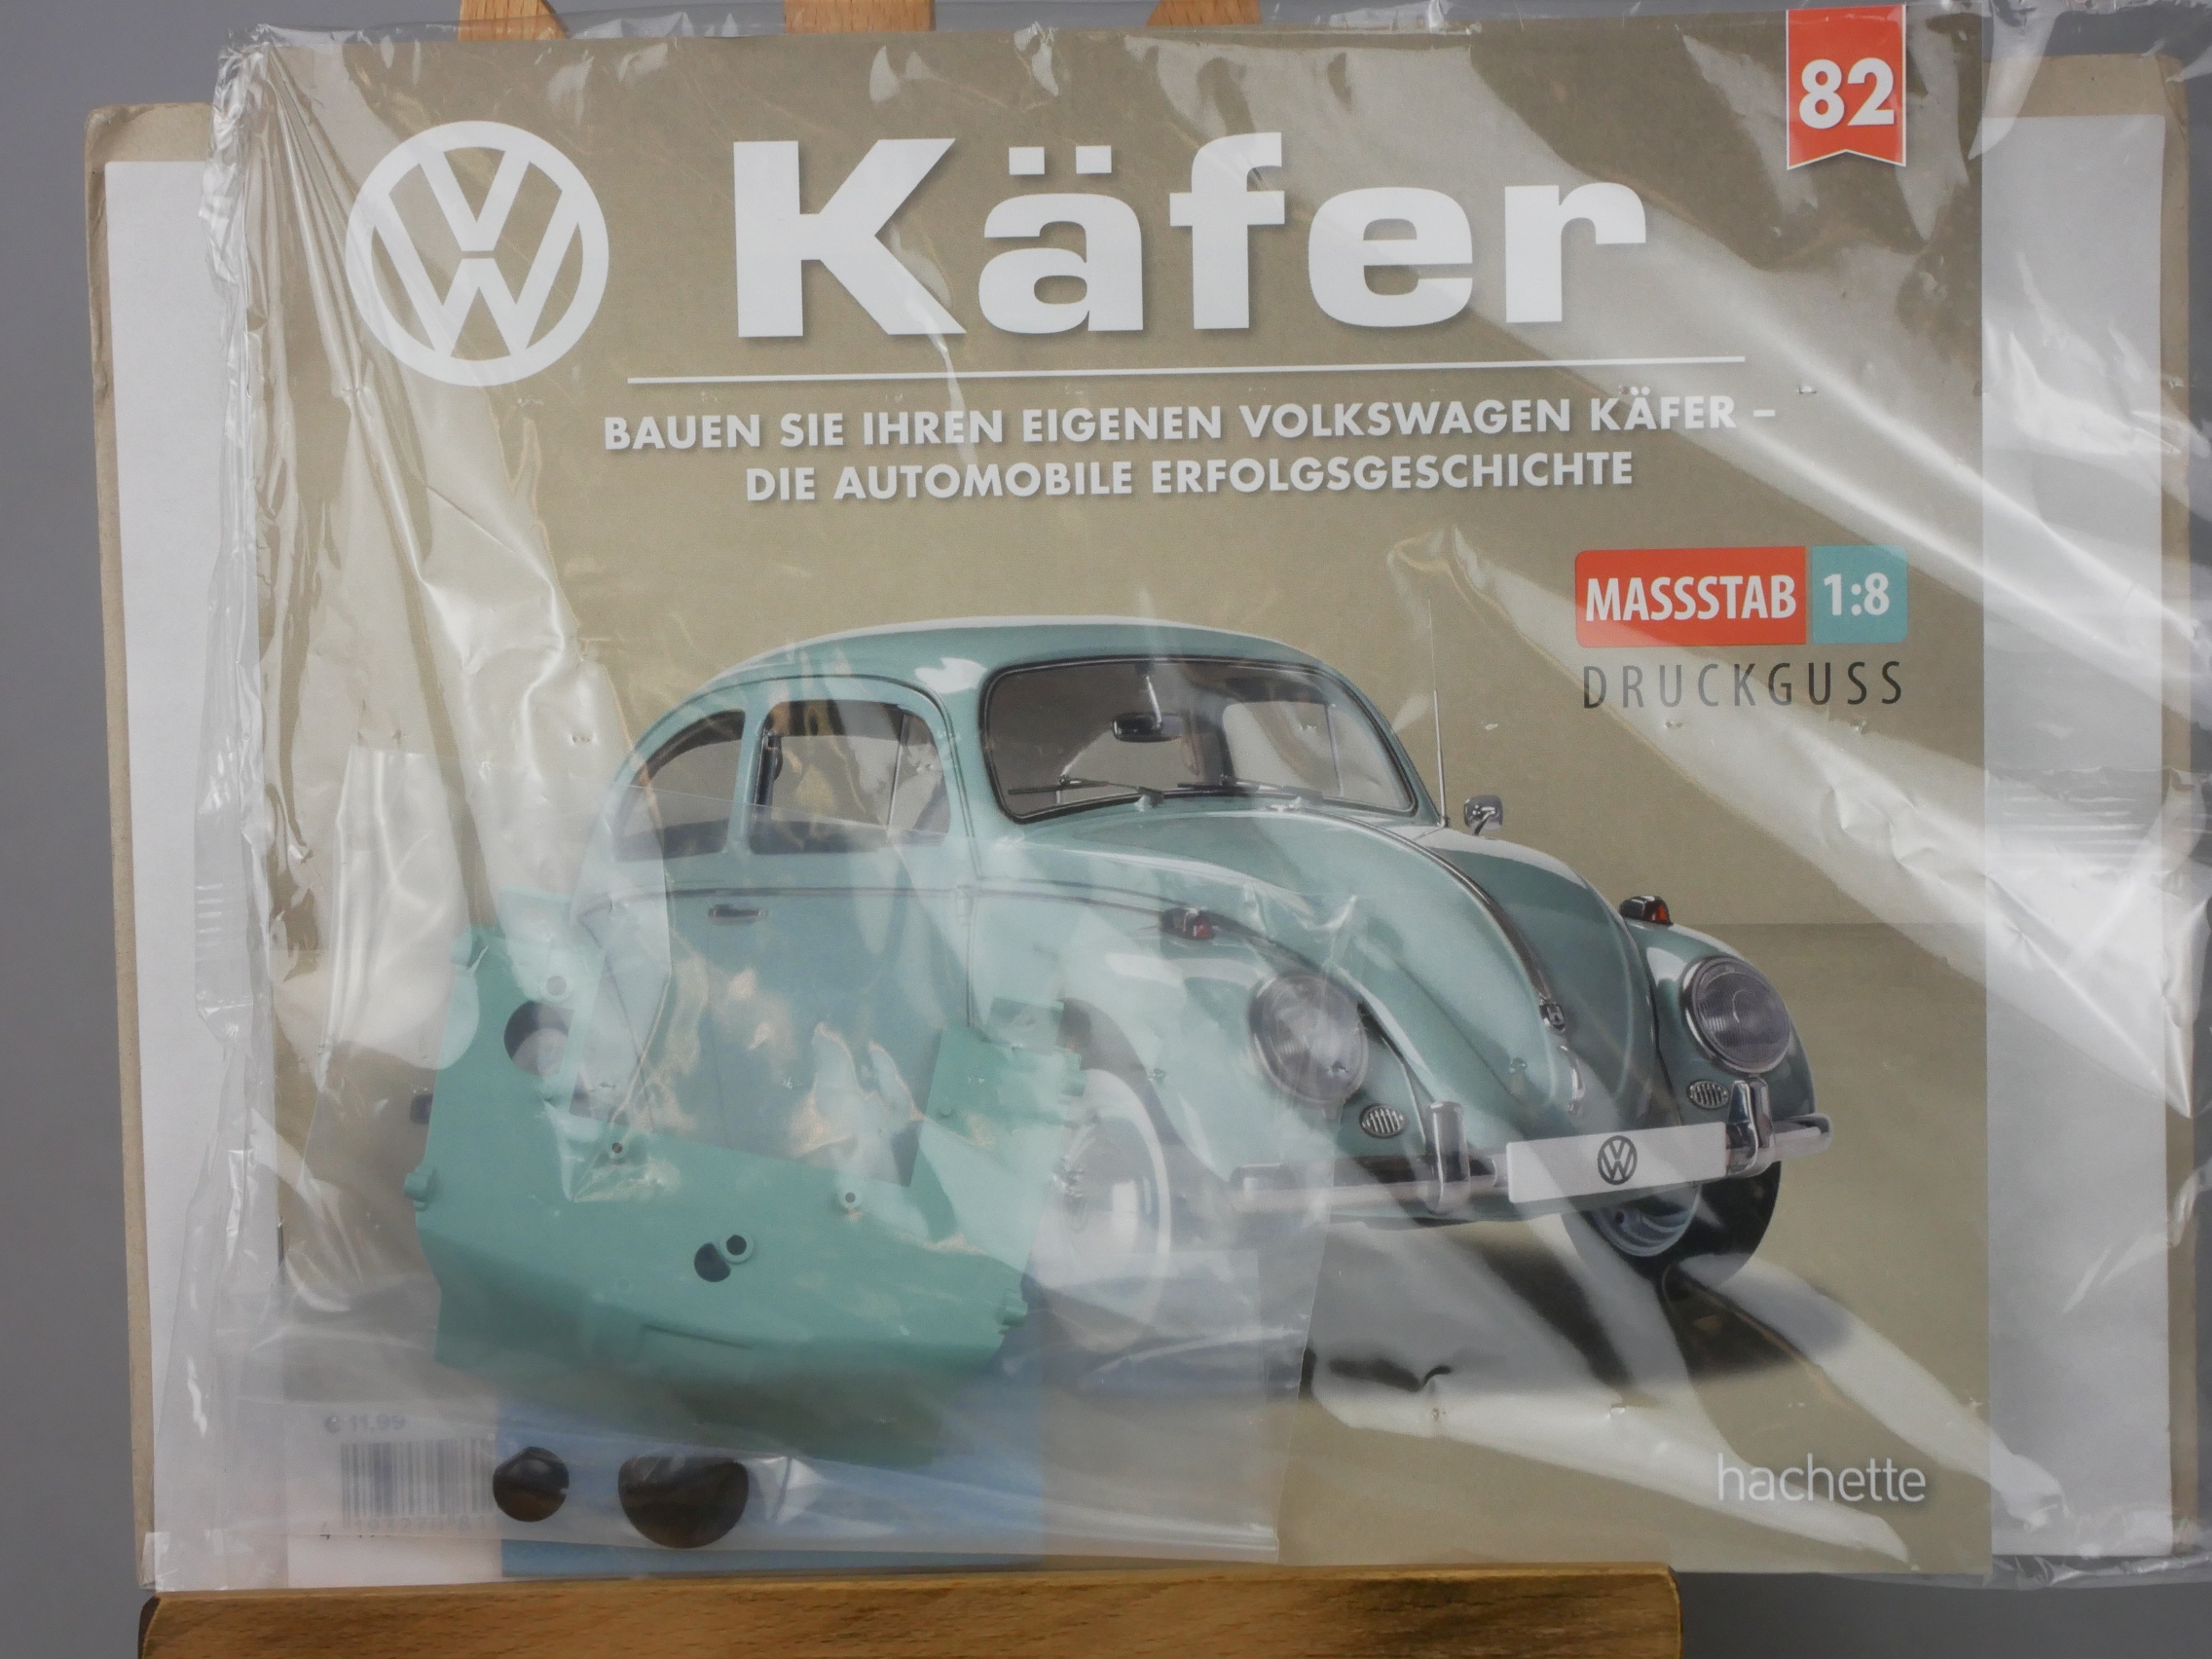  Ausgabe 82 Volkswagen VW Käfer 1/8 Hachette - 126449